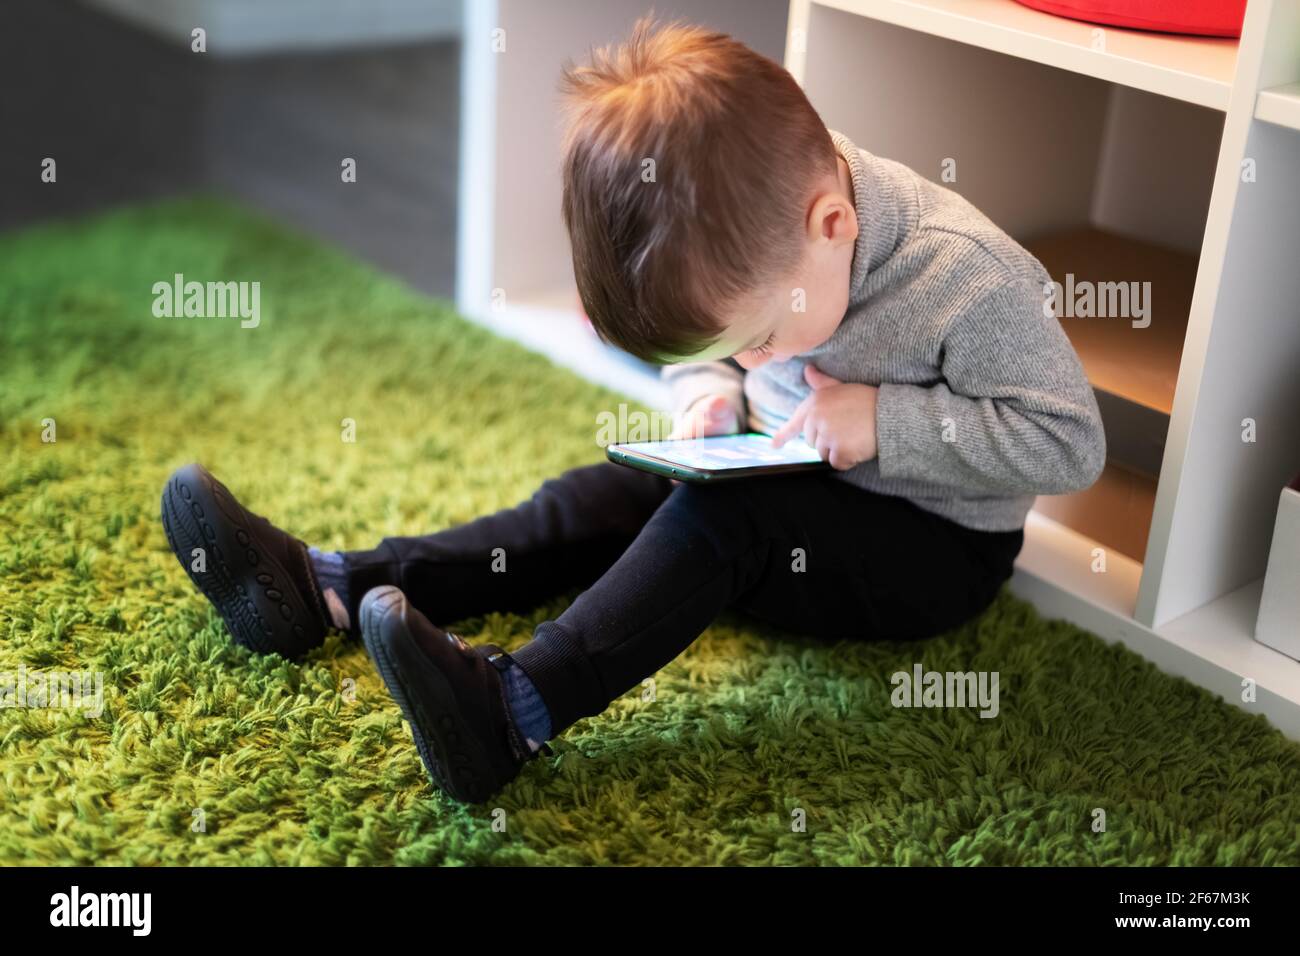 Kleiner Junge spielen Spiele auf dem Smartphone Stockfoto